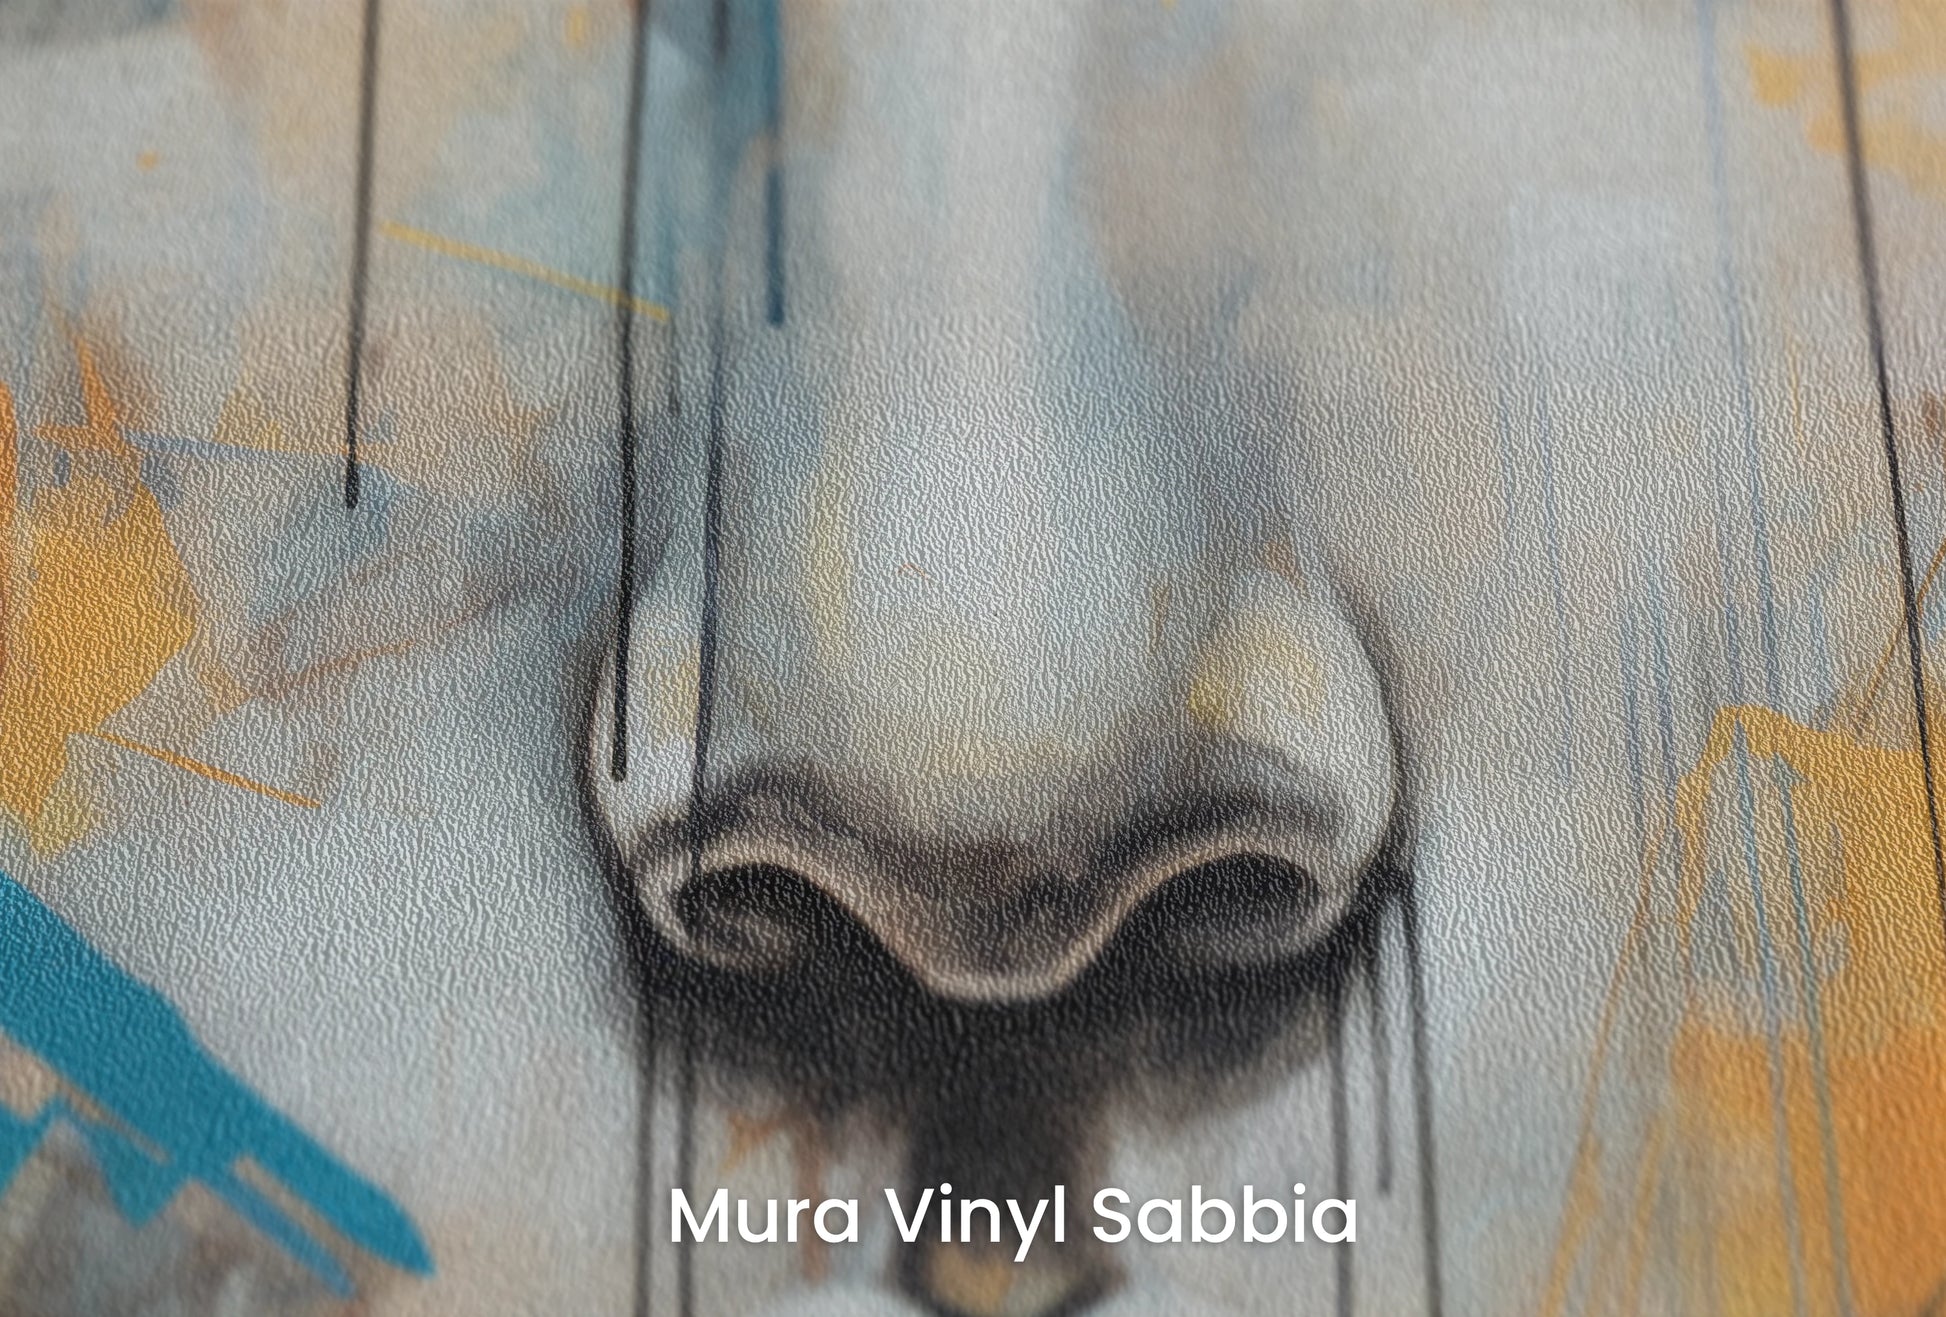 Zbliżenie na artystyczną fototapetę o nazwie Gaze of Times na podłożu Mura Vinyl Sabbia struktura grubego ziarna piasku.